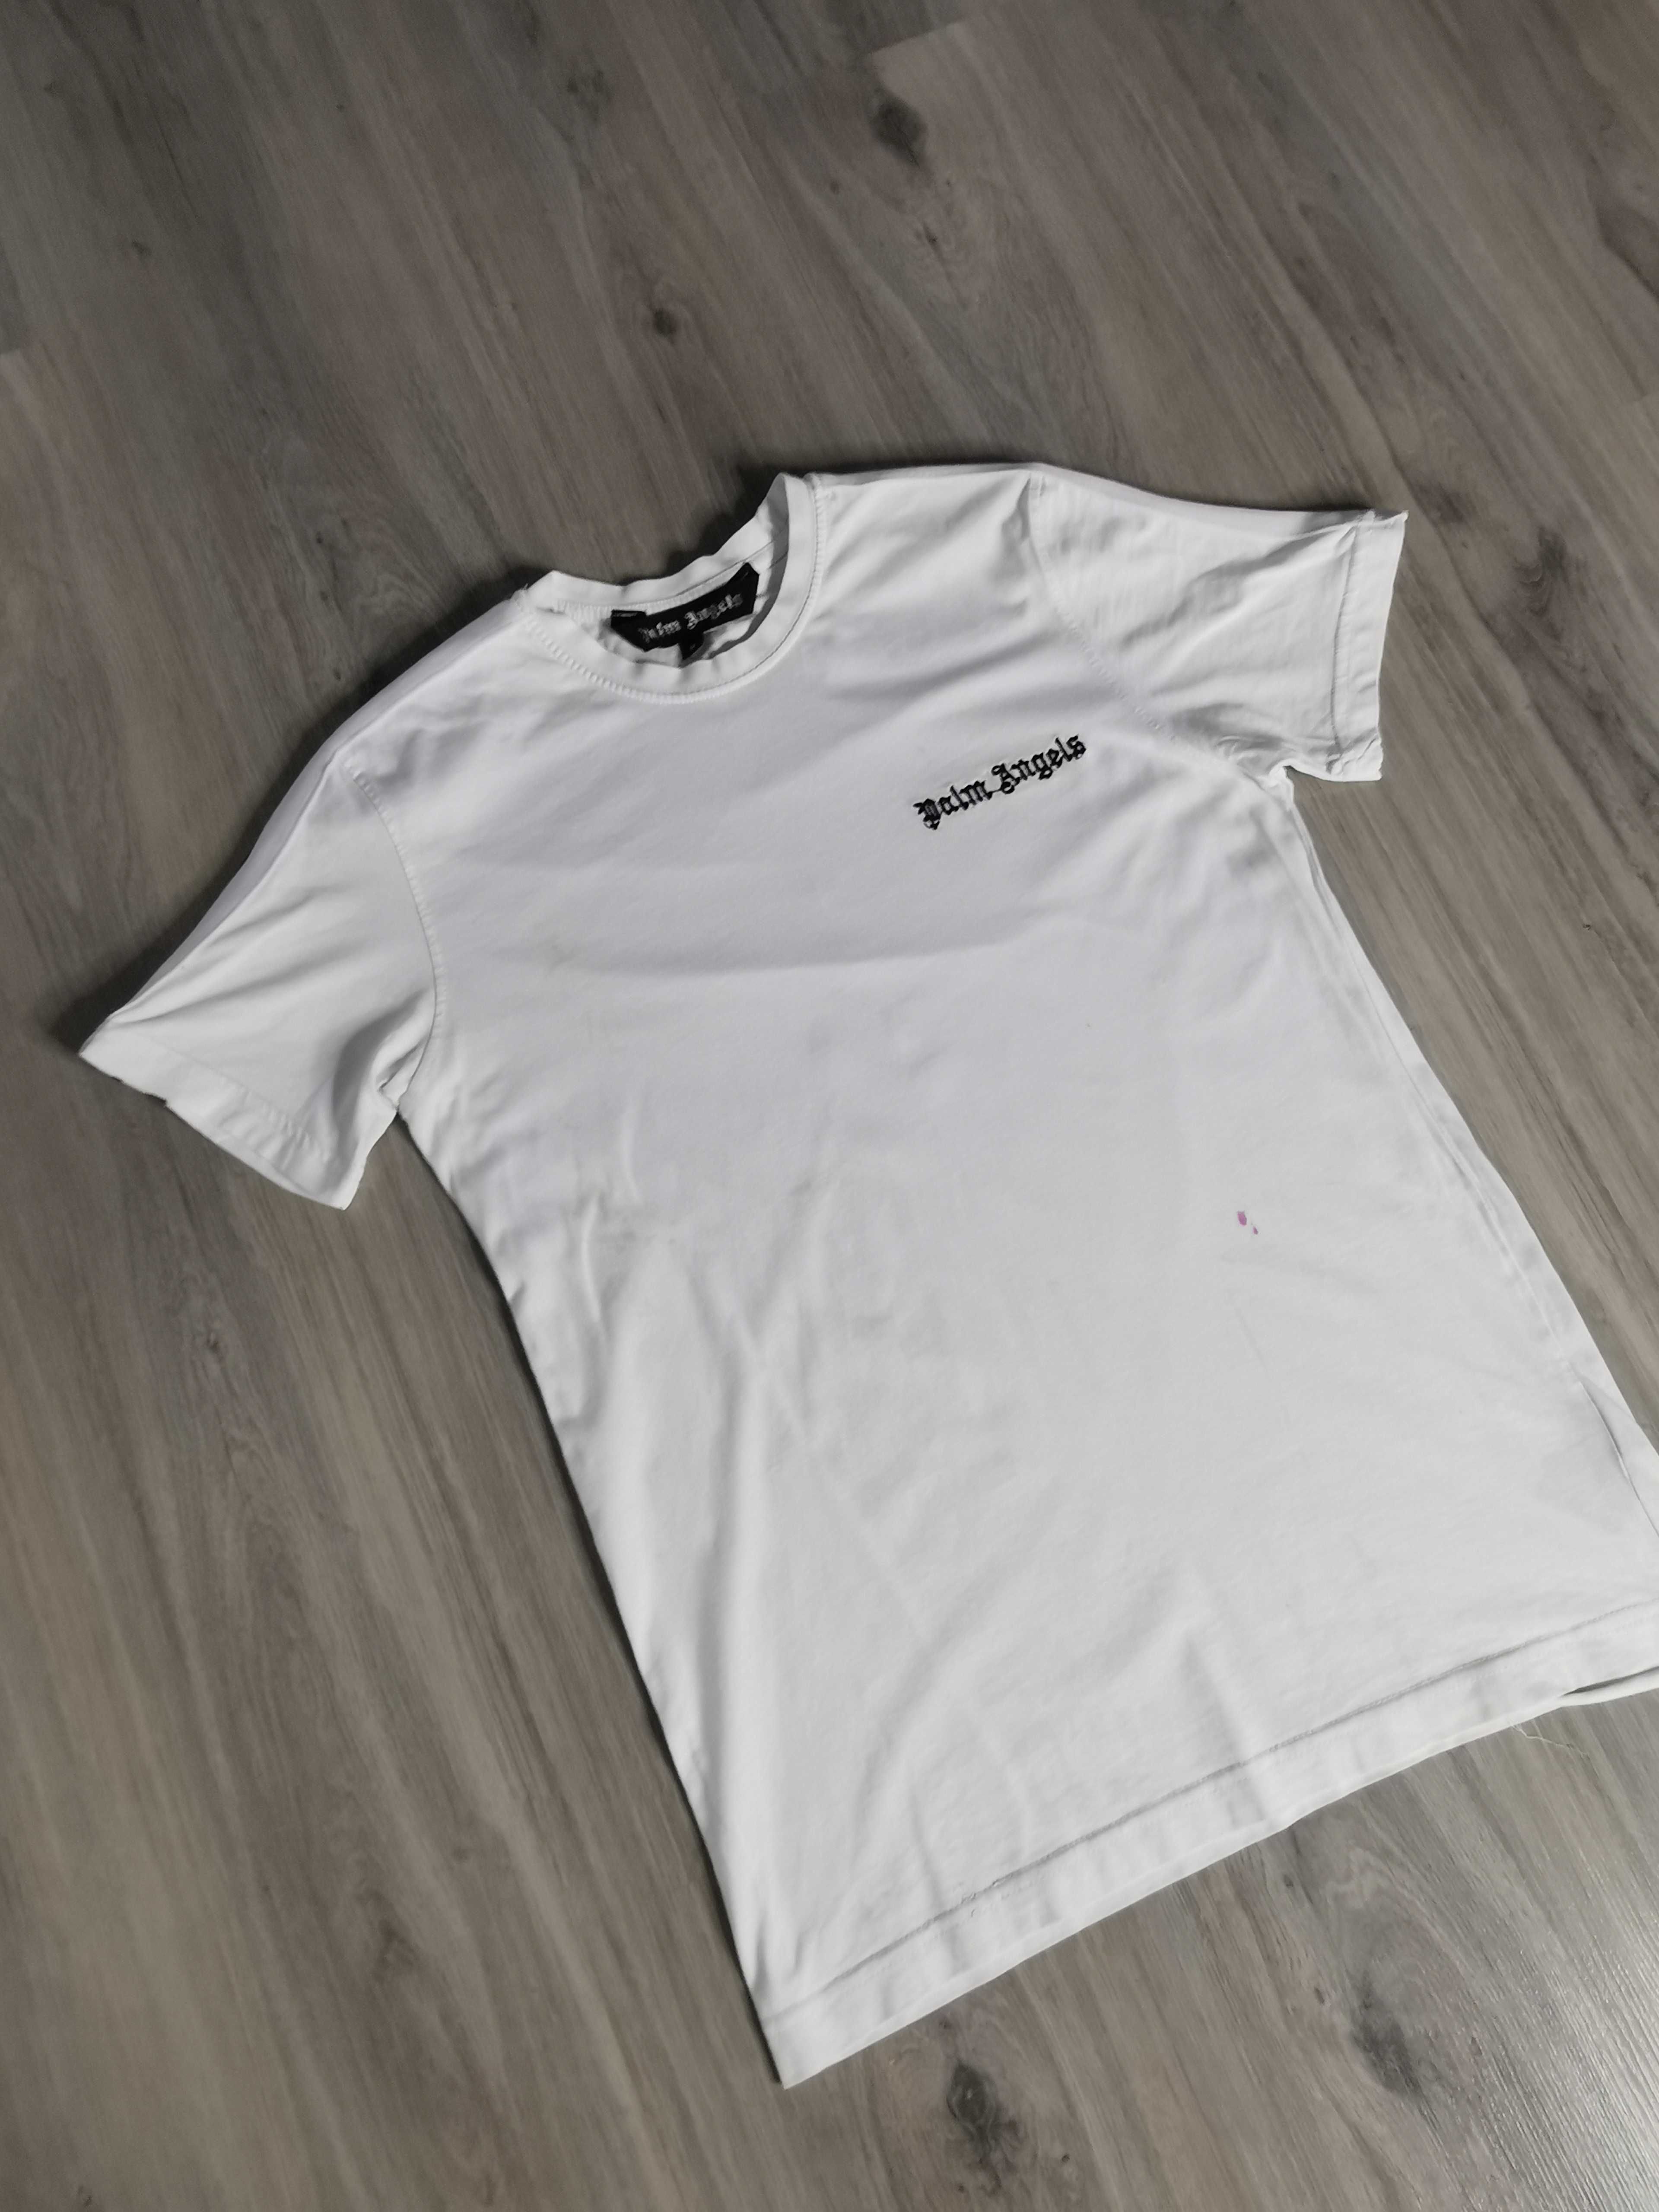 T-shirt koszulka Palm Angels wyszywane logo rozmiar S/M biała white